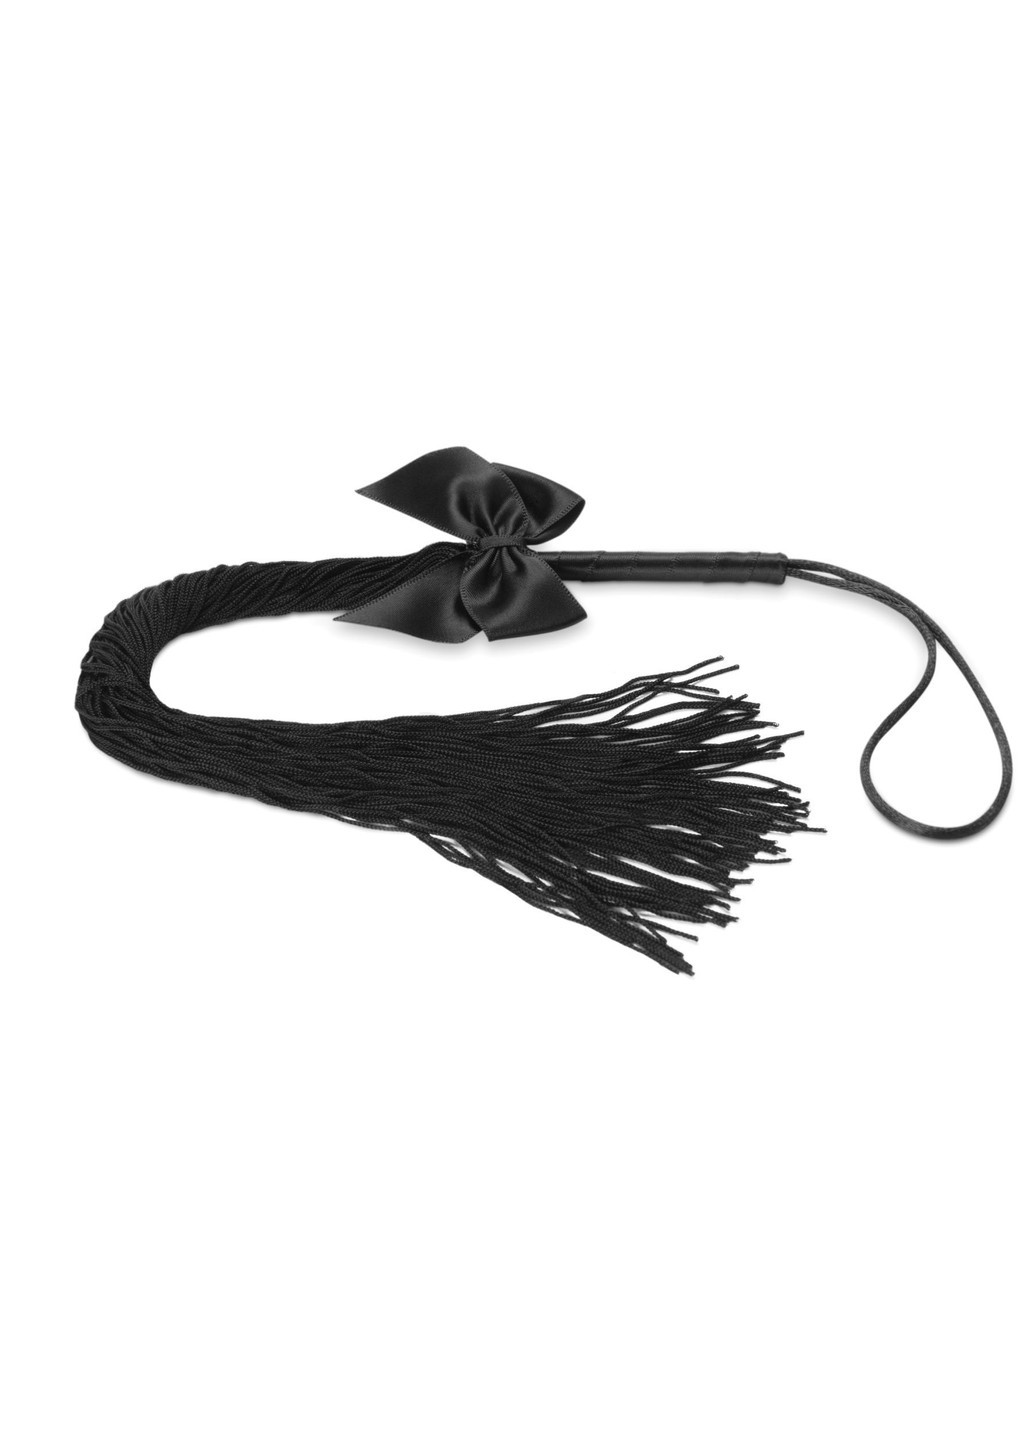 Плеть - Lilly - Fringe whip украшена шнуром и бантиком, в подарочной упаковке Bijoux Indiscrets (255247618)